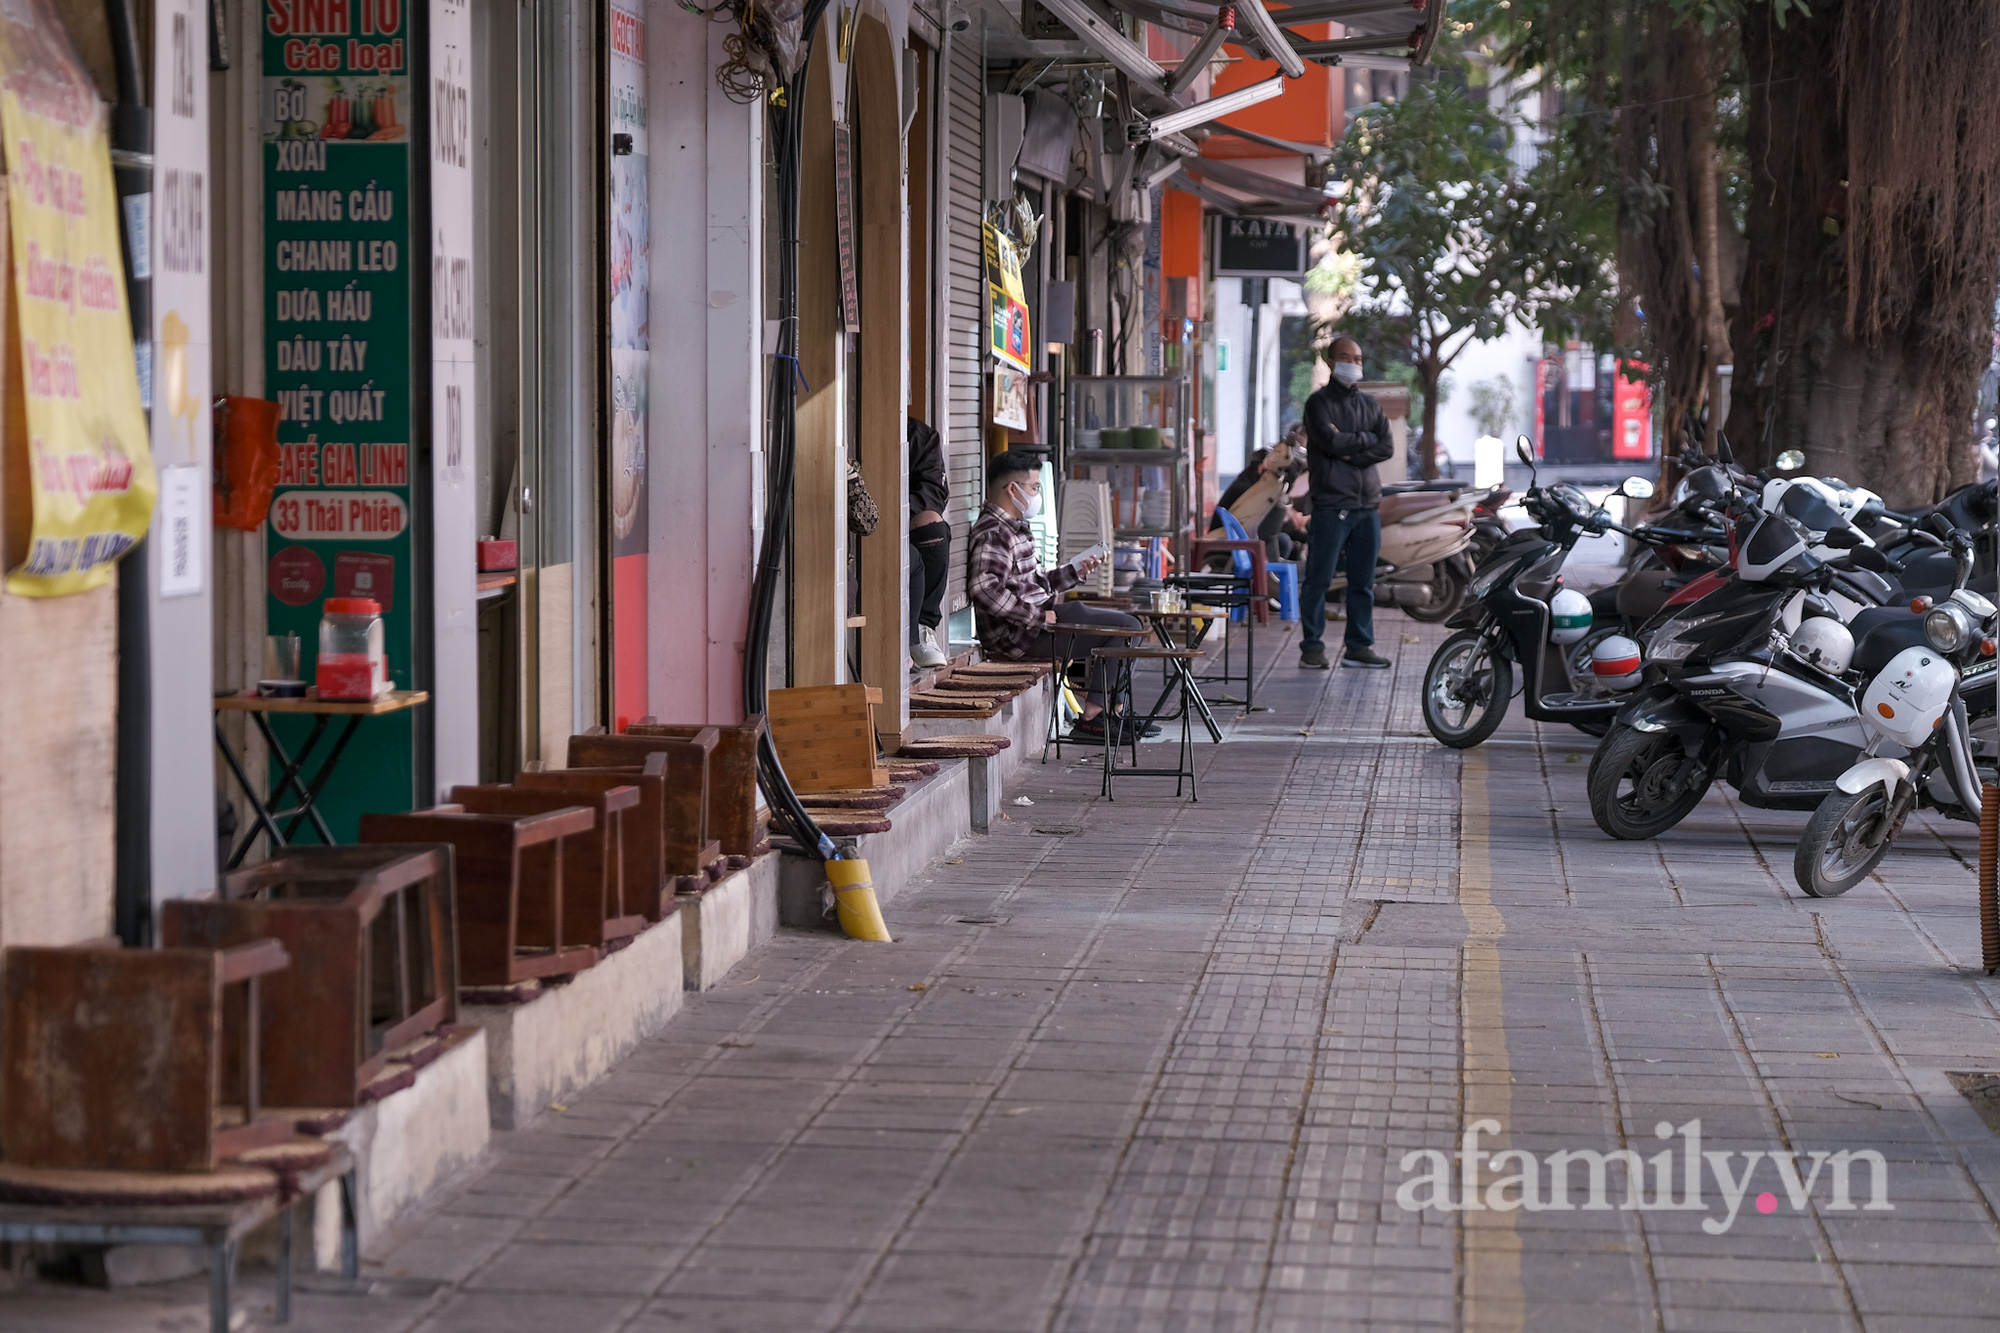 Ảnh: Hàng ăn uống, hoạt động không thiết yếu tại 2 quận trung tâm Hà Nội trước giờ tạm dừng - Ảnh 7.